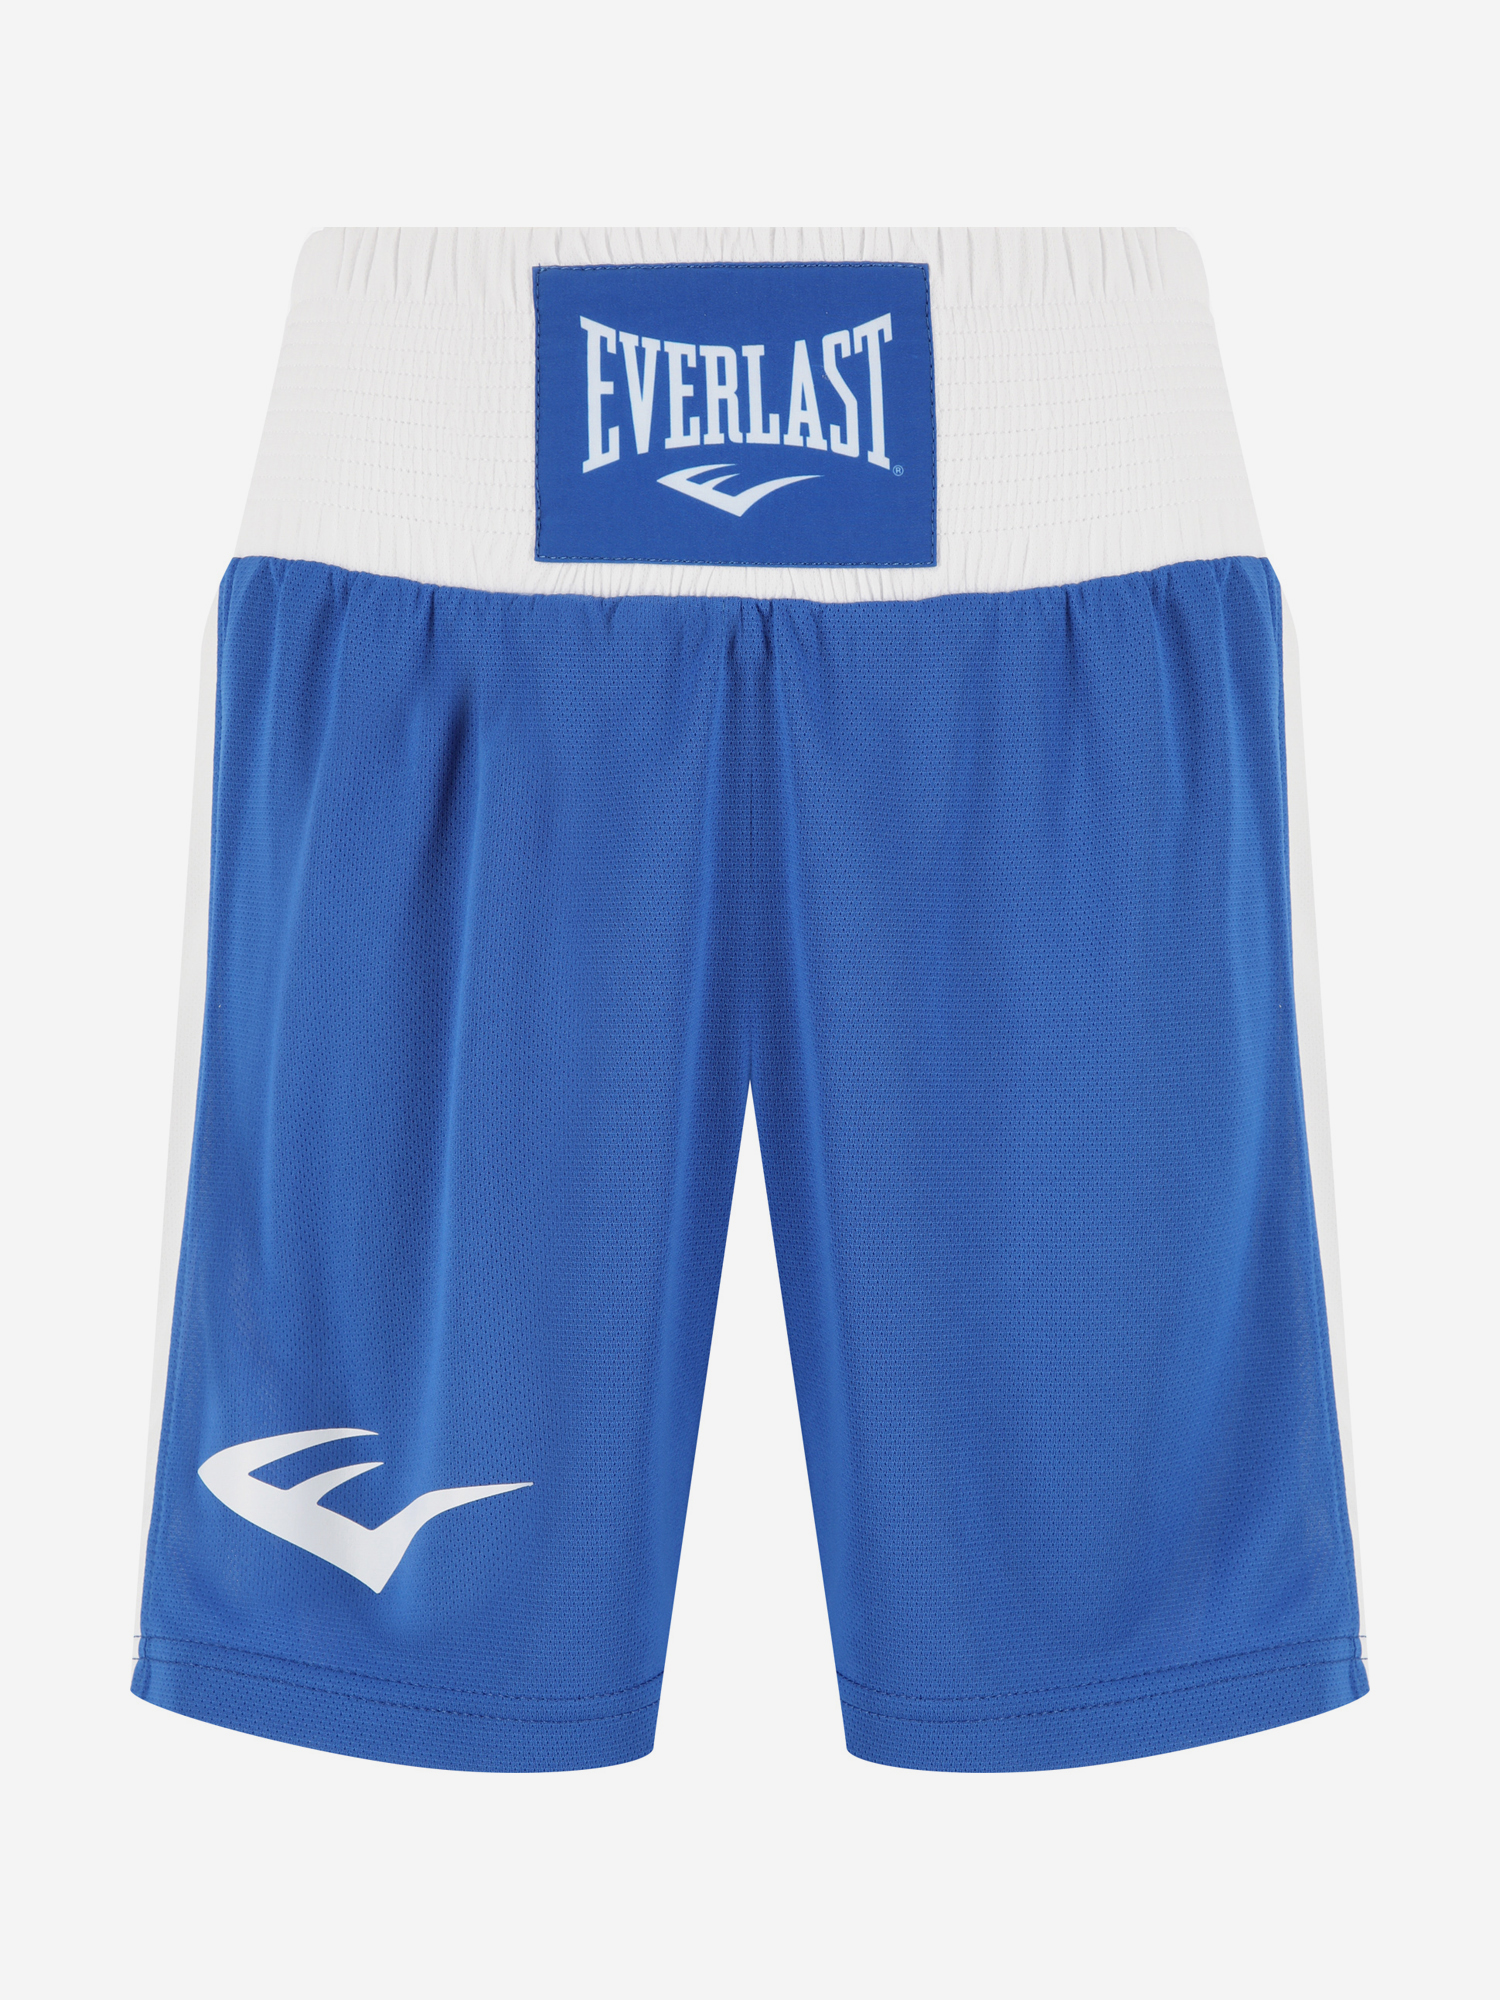 Шорты для бокса Everlast Shorts Elite, Синий перчатки боксерские everlast pro style elite 2114e 14oz к з красный